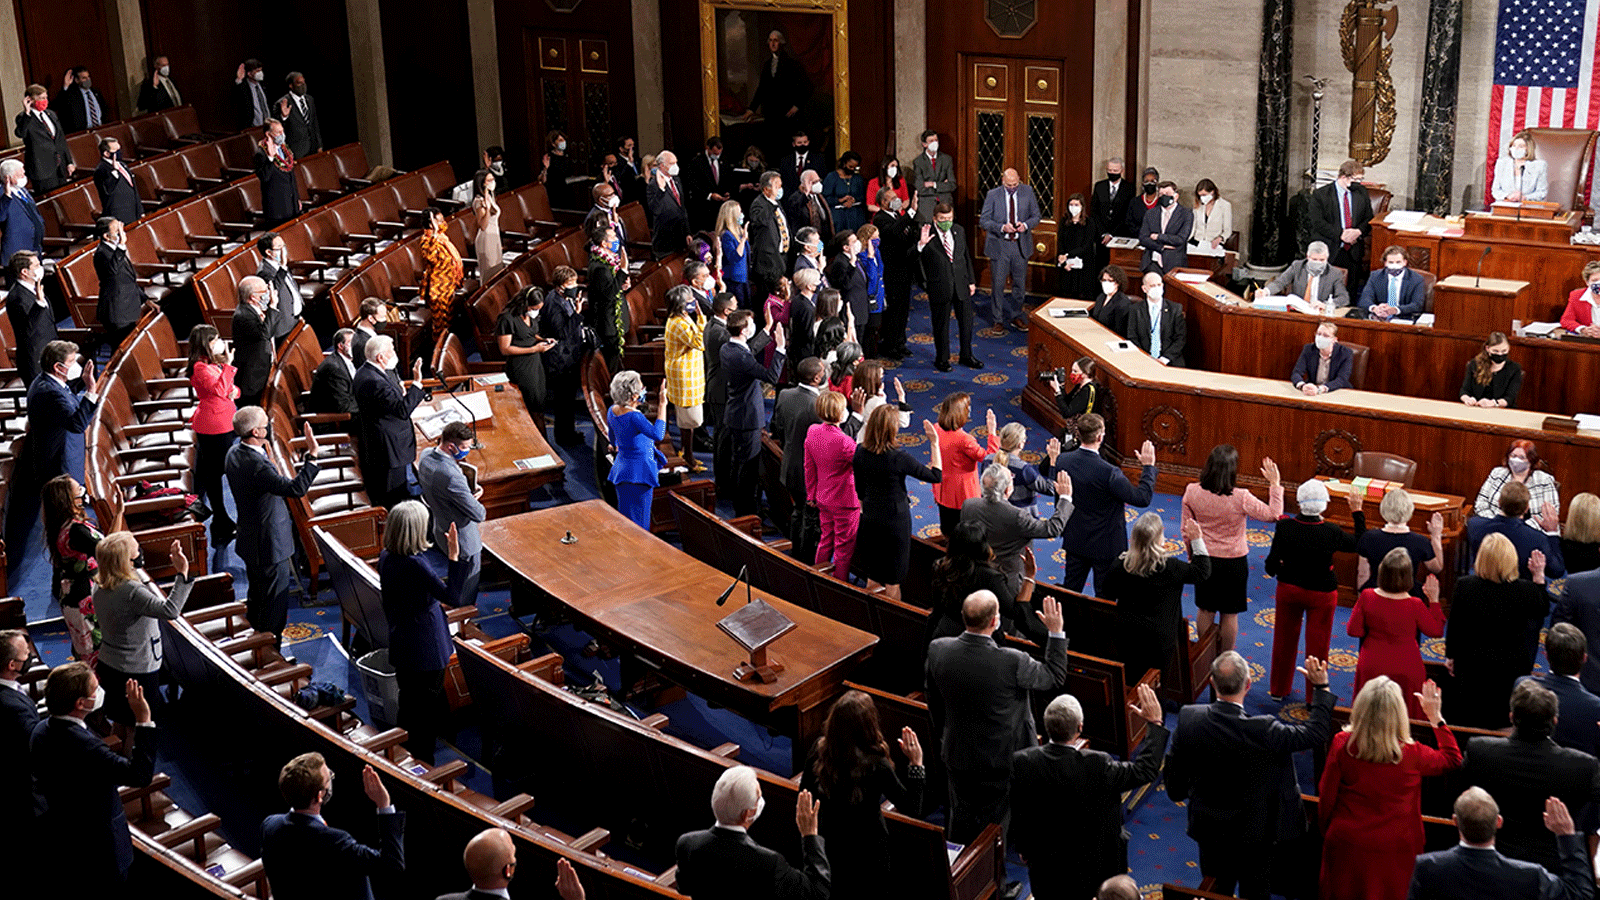 الأعضاء الديمقراطيون في مجلس النواب الأميركي يؤدون اليمين أمام رئيسة مجلس النواب نانسي بيلوسي خلال الجلسة الأولى للكونغرس الـ 117 في 3 كانون الثاني/ يناير 2021